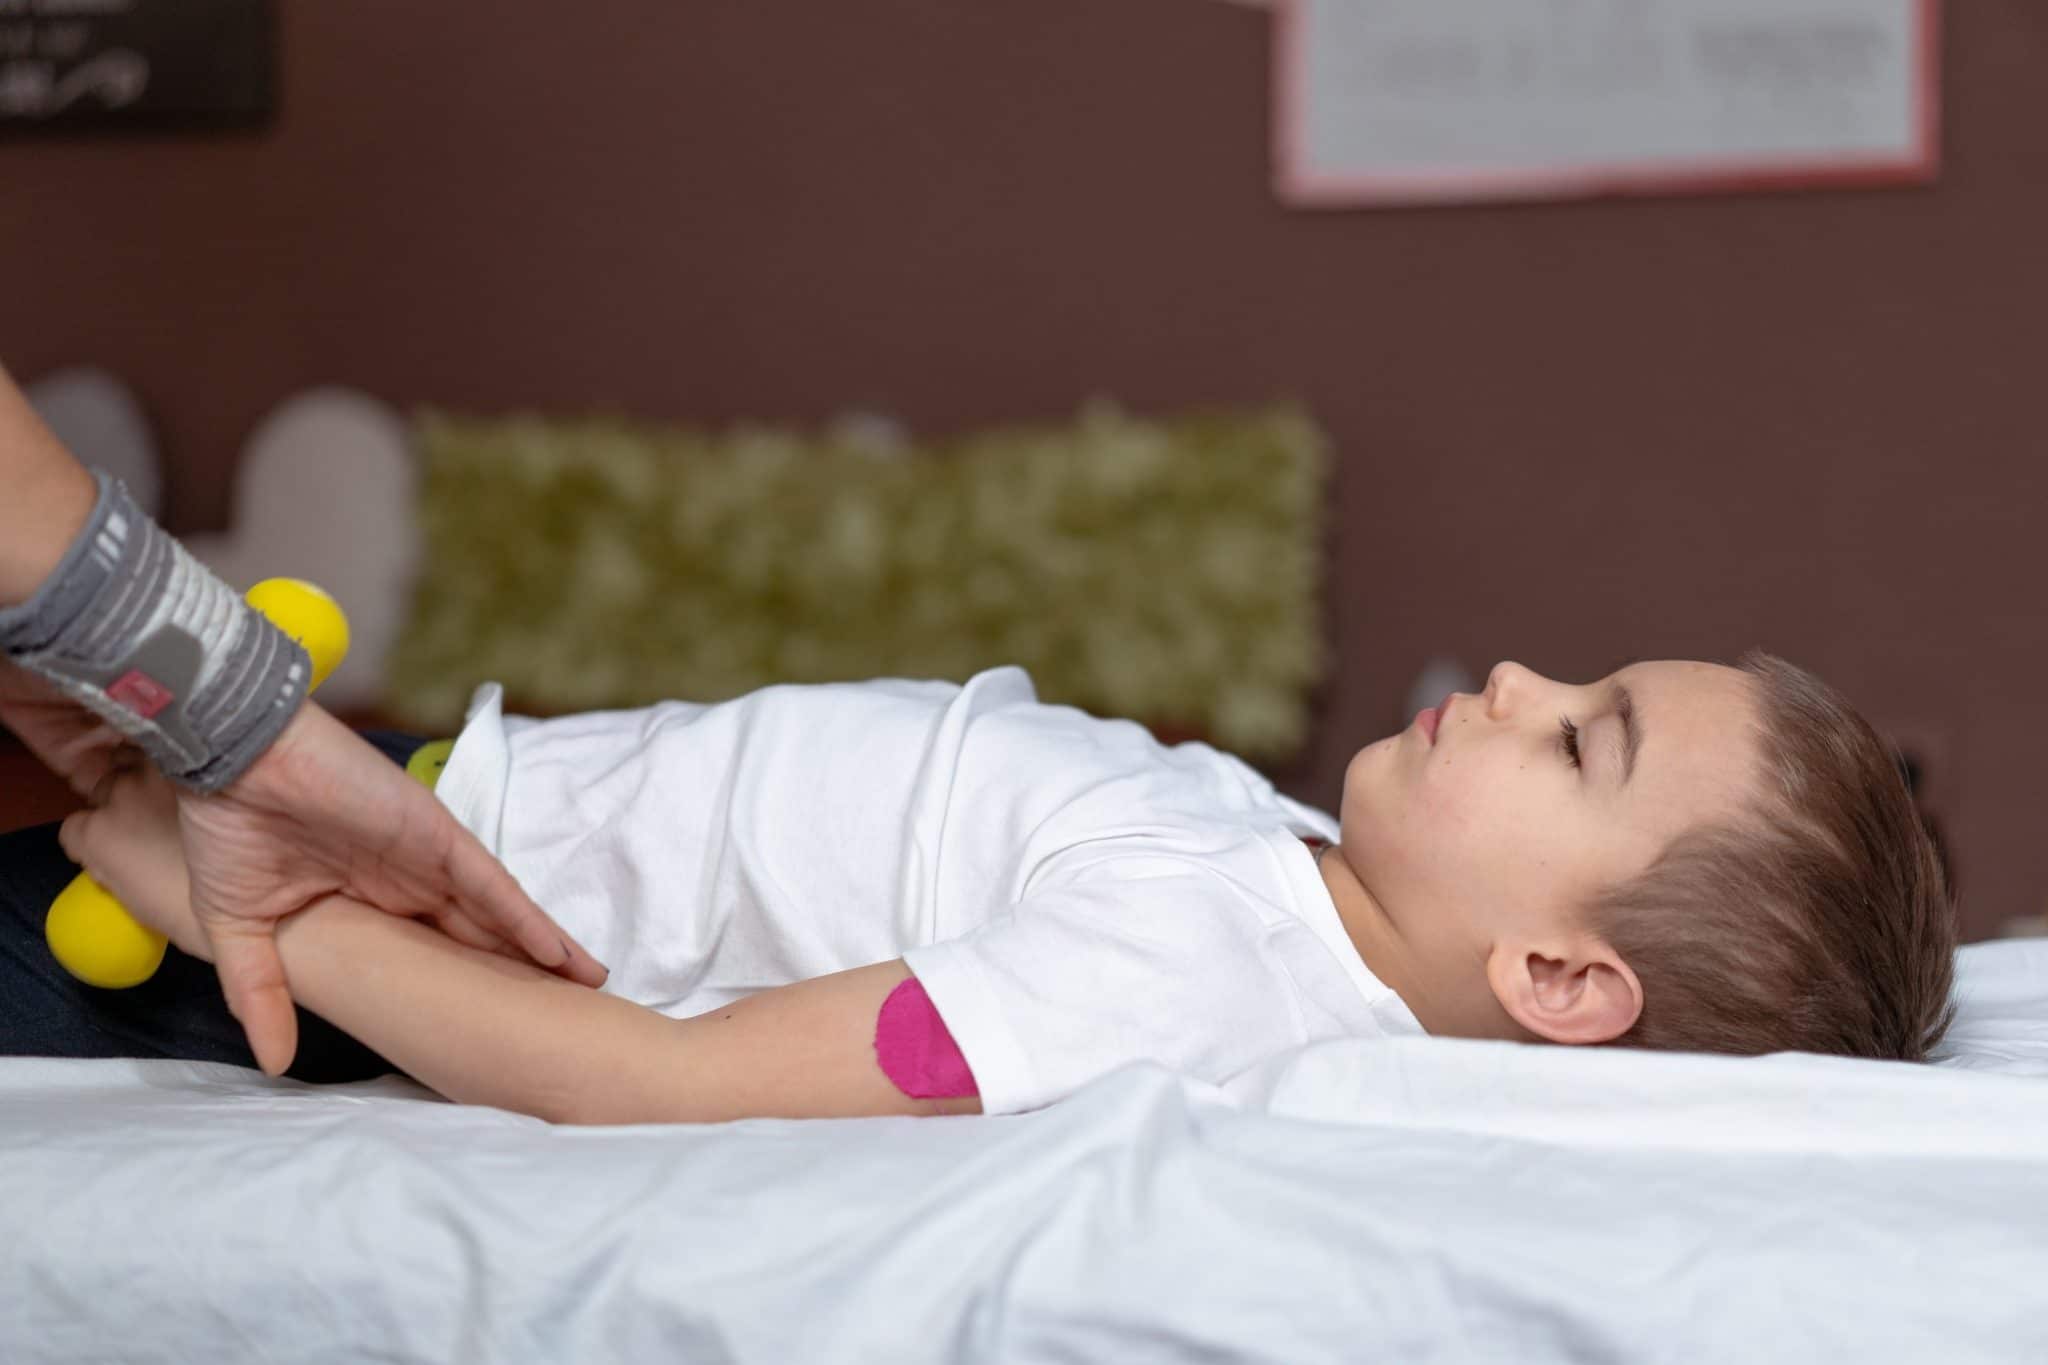 Un enfant allongé sur un lit pendant qu'un adulte tient les pieds de l'enfant avec un jouet sensoriel lors d'une séance d'ostéopathie.